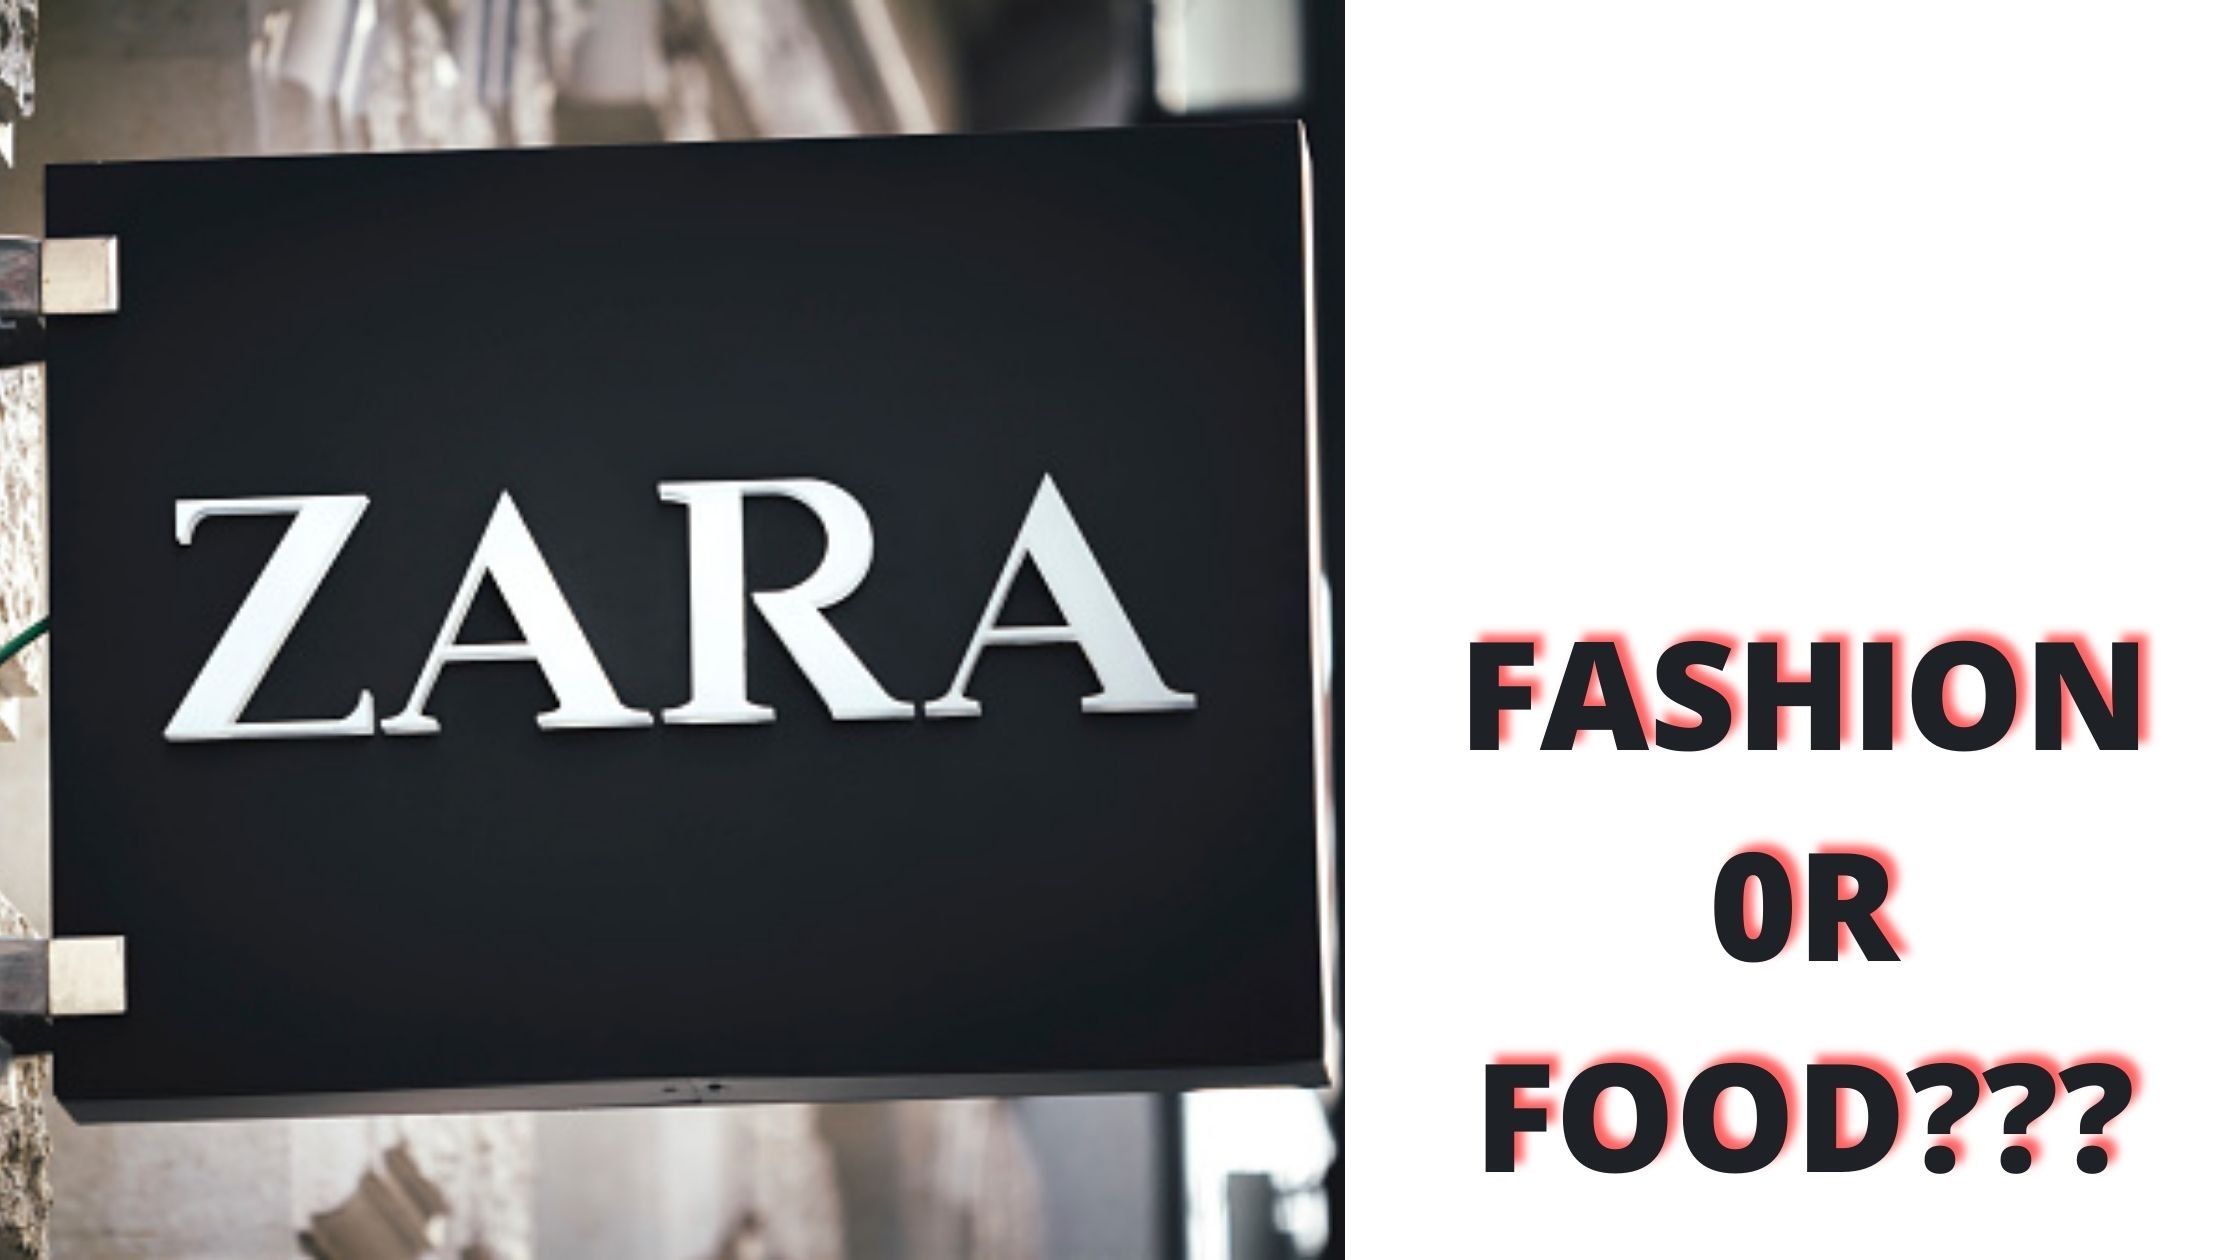 Case Study on Zara: Fashion or Food?